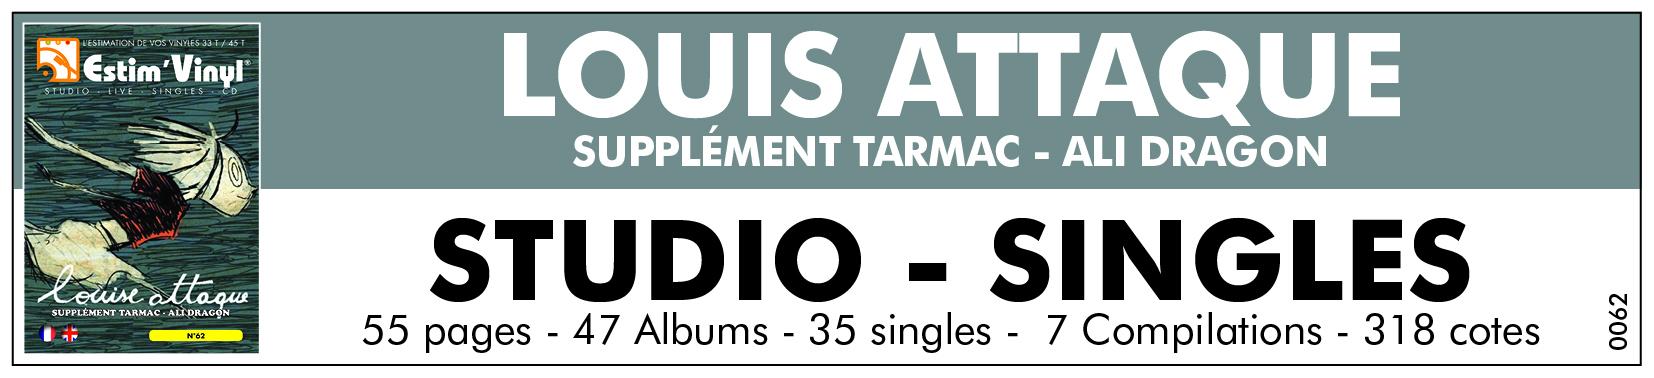 Retrouvez la cotes des albums vinyles et CD du groupe Louis Attaque, www.estimvinyl.com